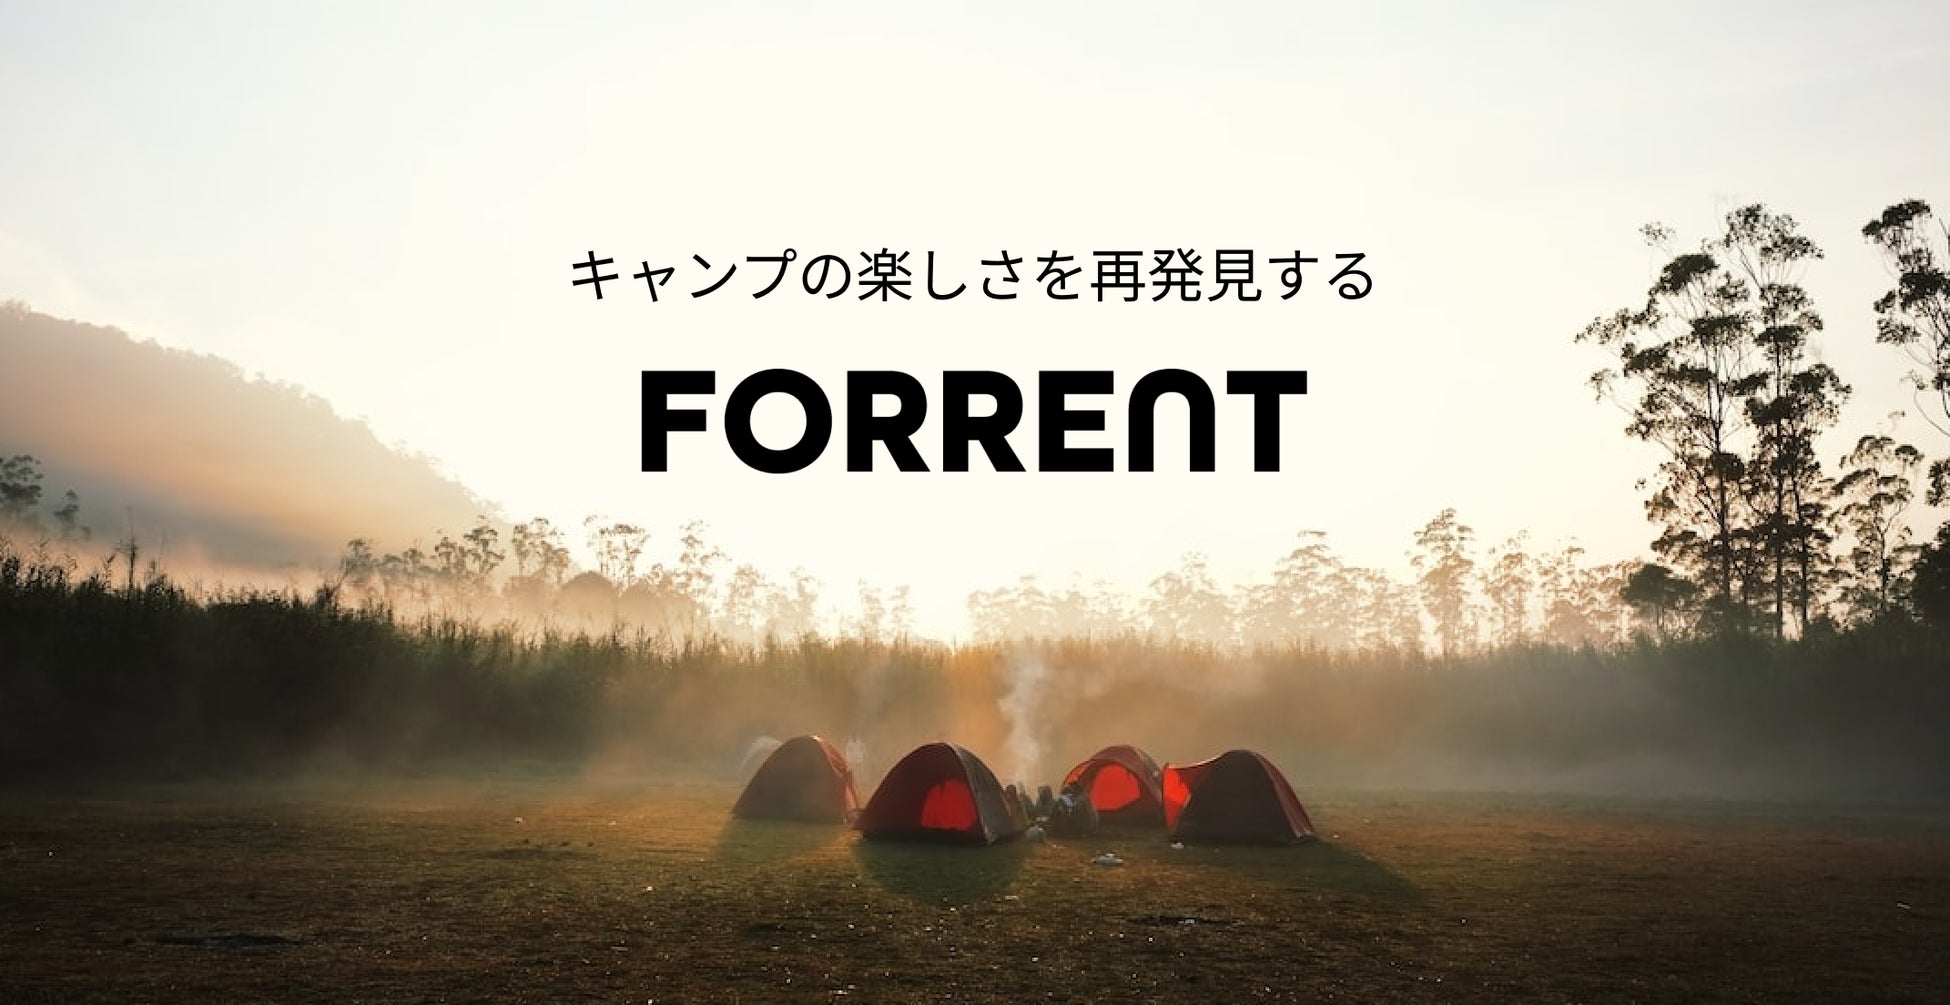 キャンプの楽しさを再発見する本格的なキャンプスタイルメディア「FORRENT」を公開のサブ画像1